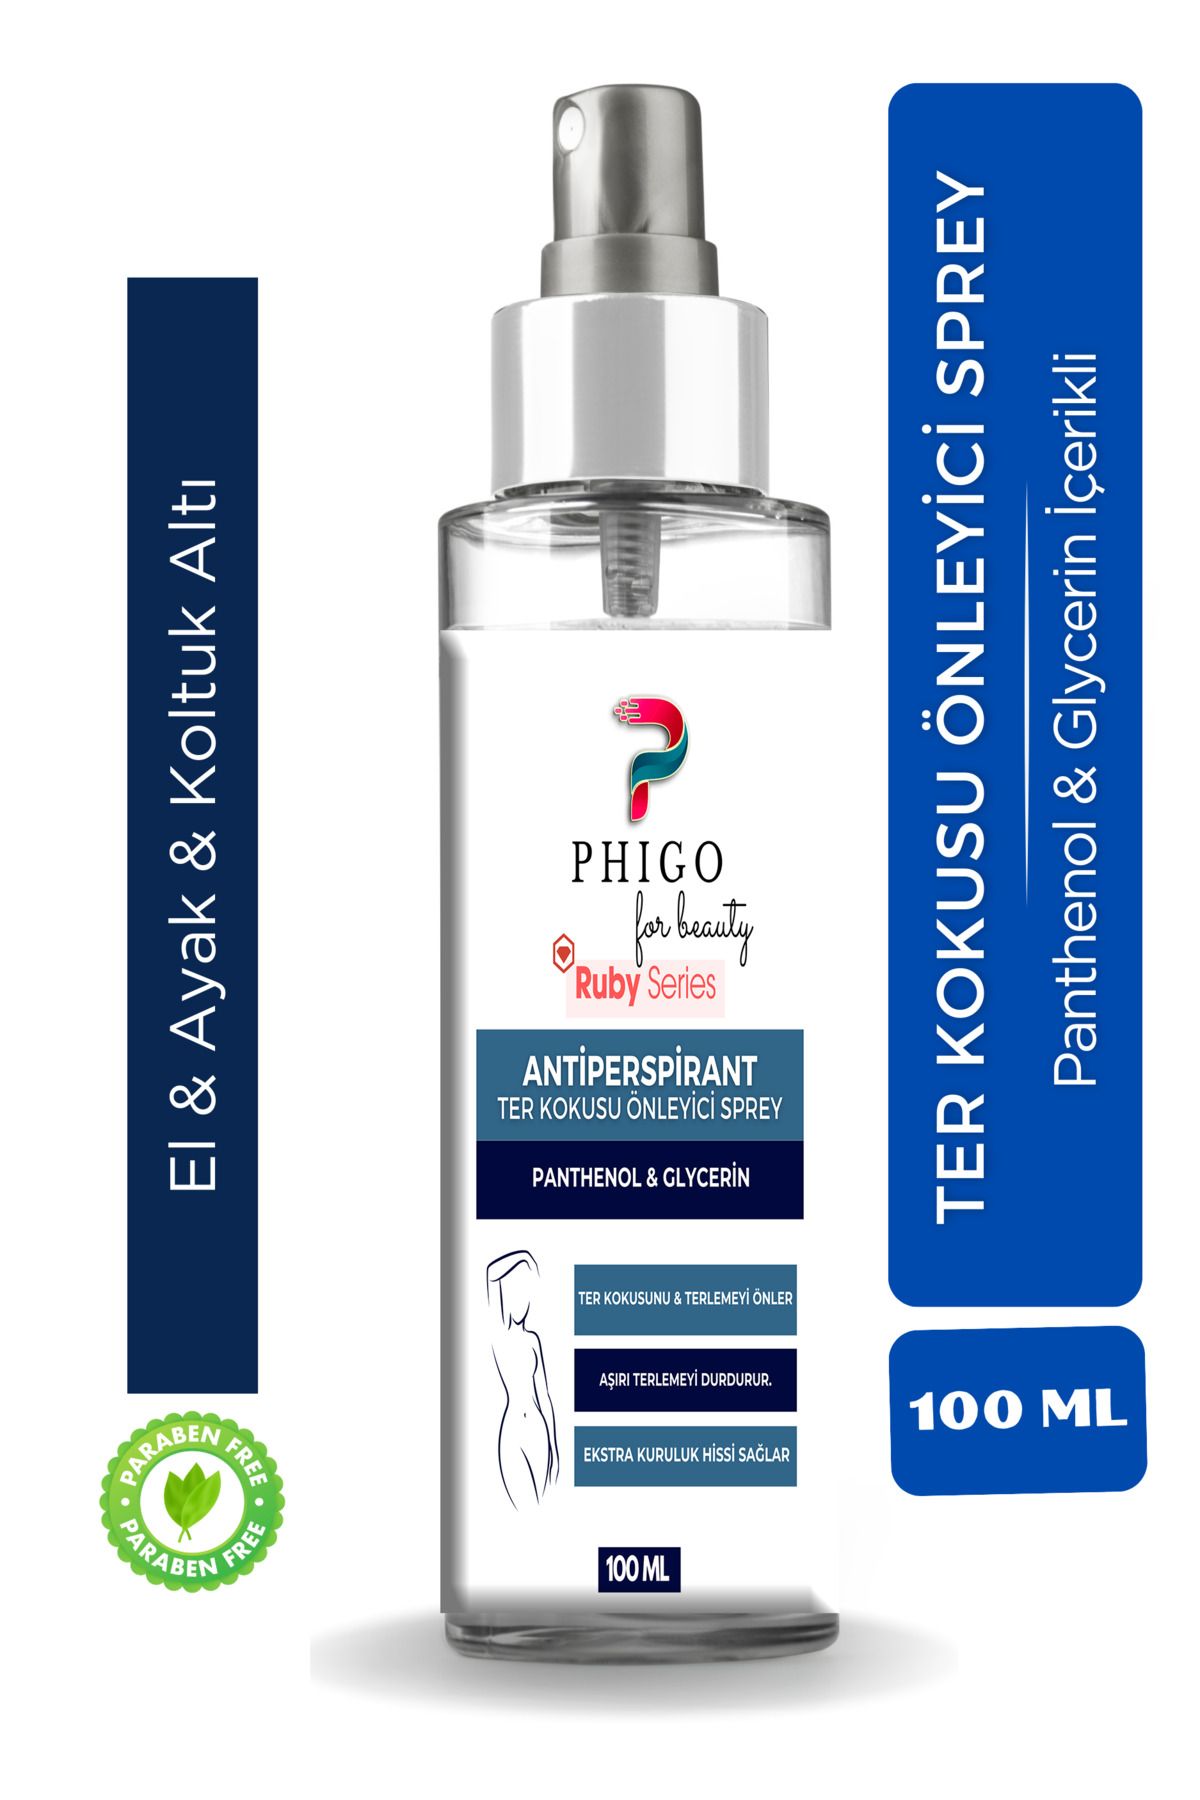 Phigo El,ayak, Koltuk Altı Terleme Önleyici Sprey Terleme Ve Ter Kokusu Önleyici Sprey Deodorant 100 ML